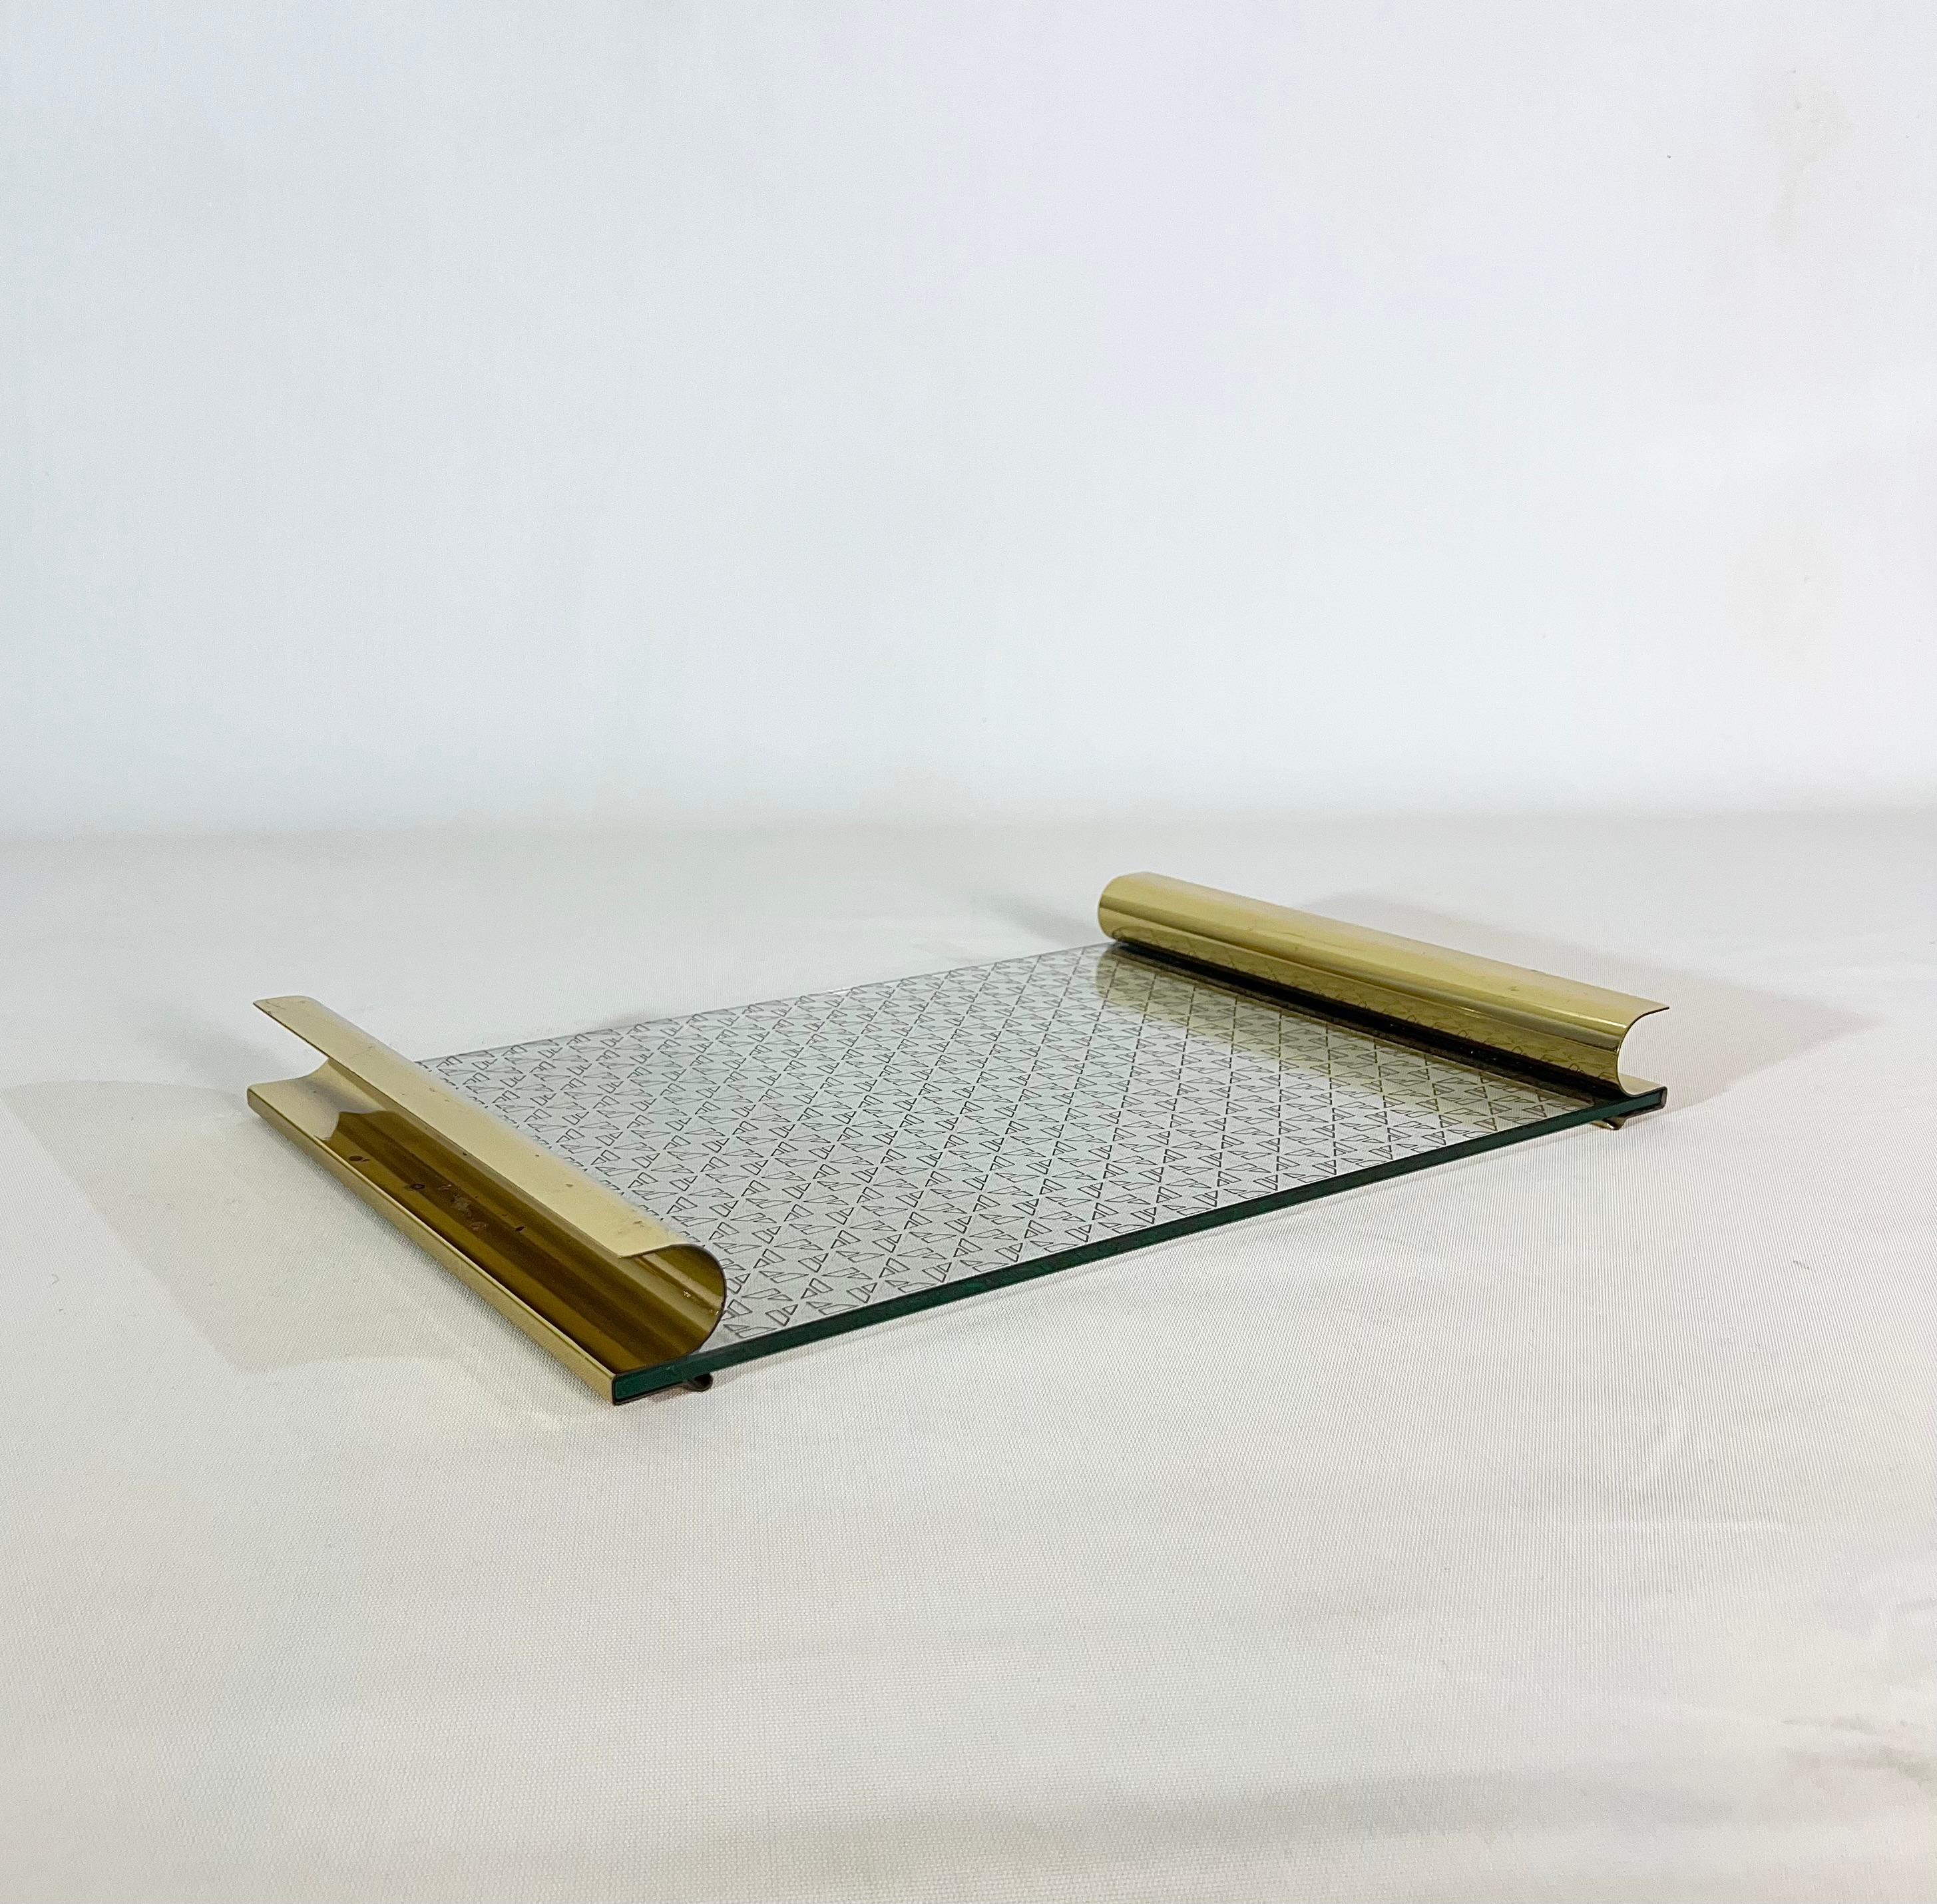 In den 70er Jahren in Italien hergestelltes Tablett. Das rechteckige Tablett wurde aus transparentem Glas hergestellt und mit geometrischen Verzierungen und geschwungenen Messinggriffen bedruckt.


Hinweis: Wir bemühen uns, unseren Kunden auch bei